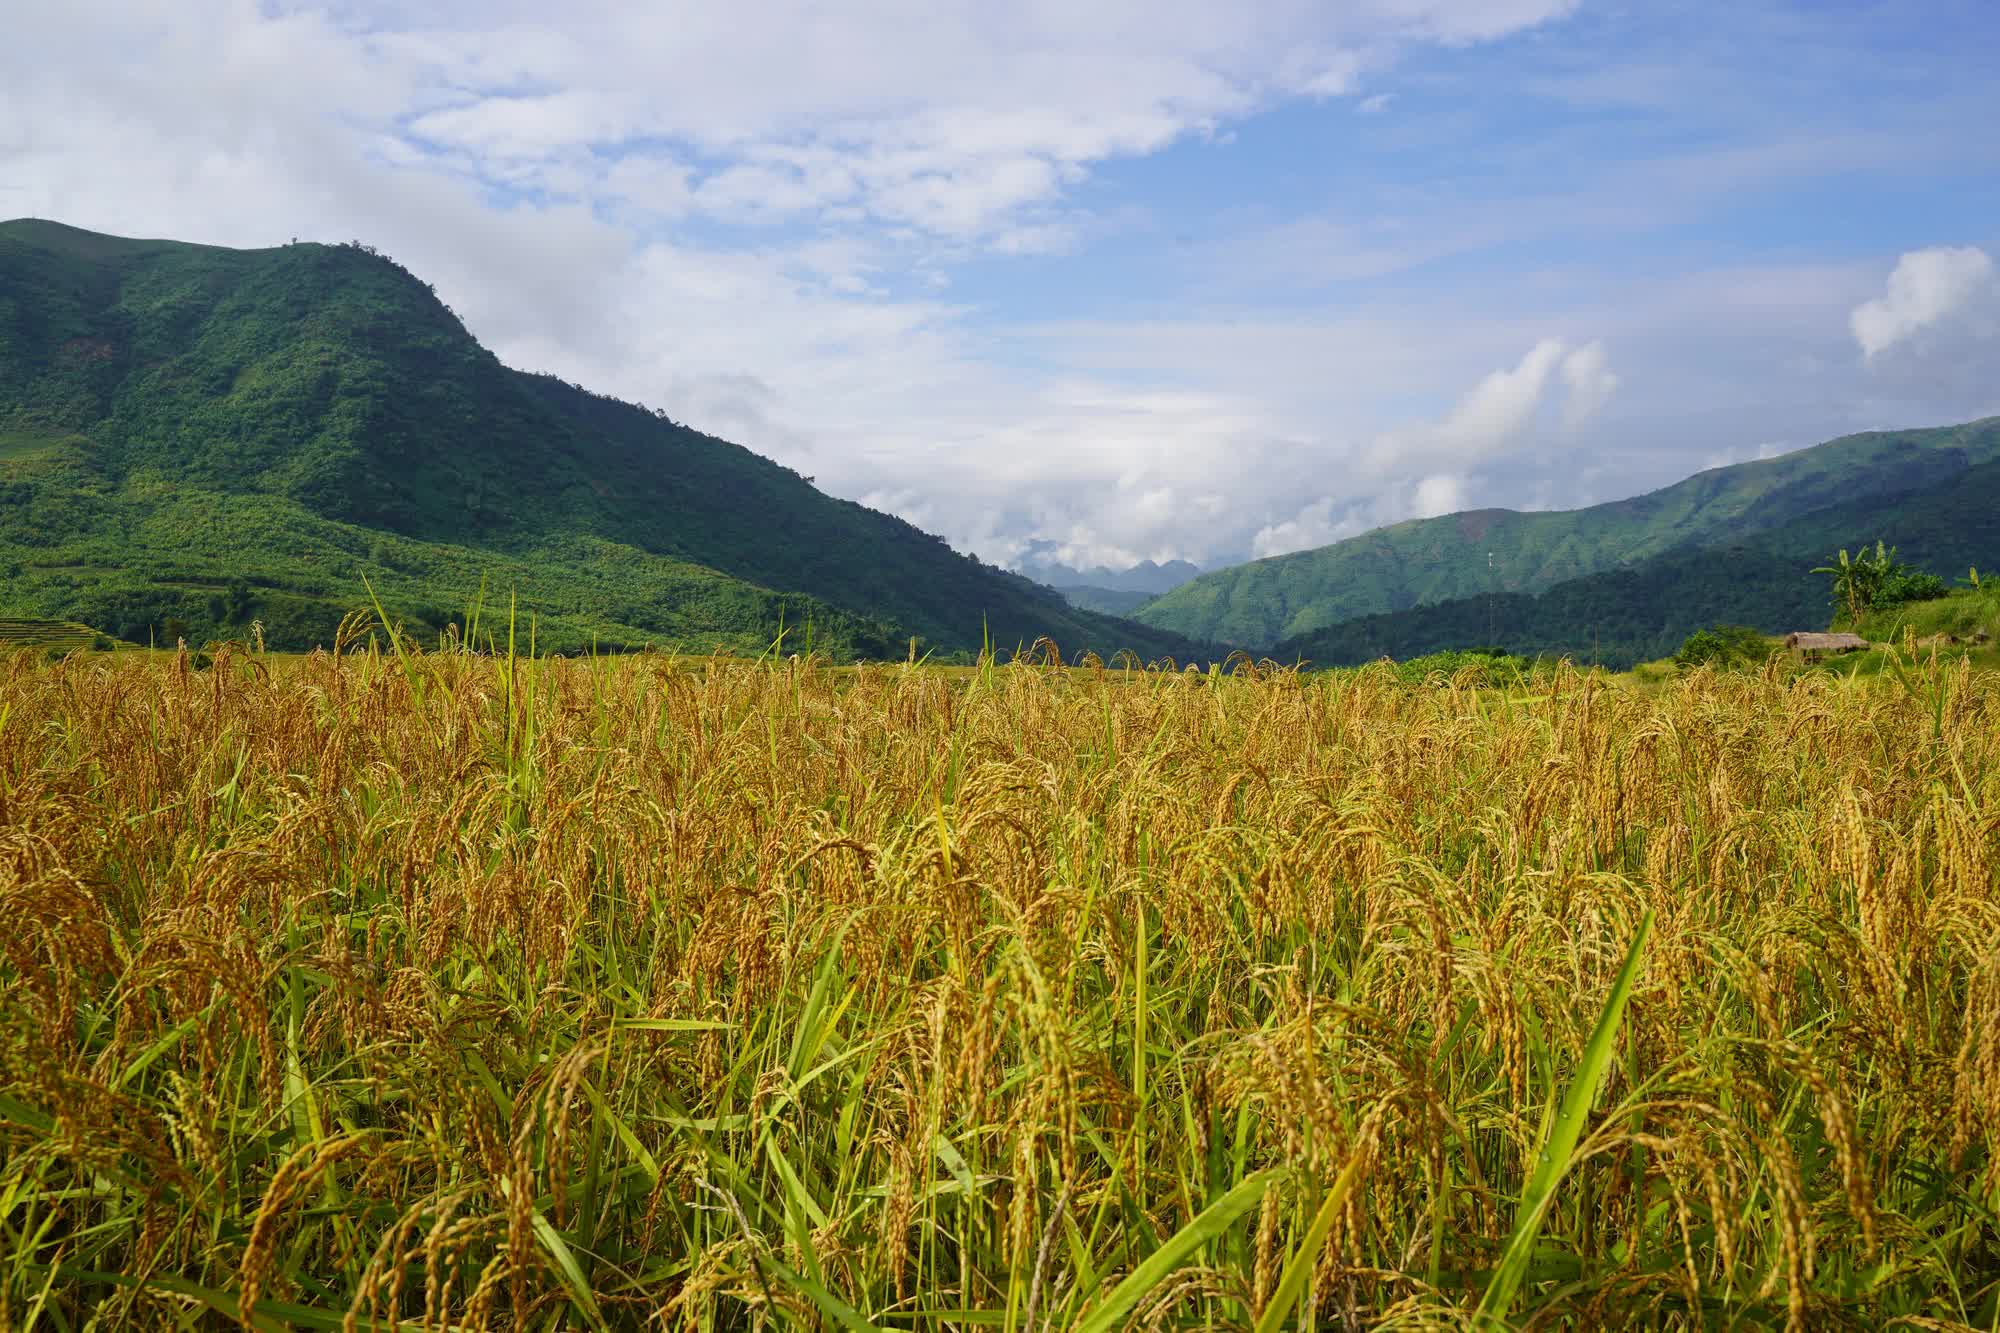 Người truyền cảm hứng làm nông nghiệp ứng phó biến đổi khí hậu ở xã bản vùng cao, đưa cây lúa địa phương thành "đặc sản 3 sao" nức tiếng - Ảnh 8.